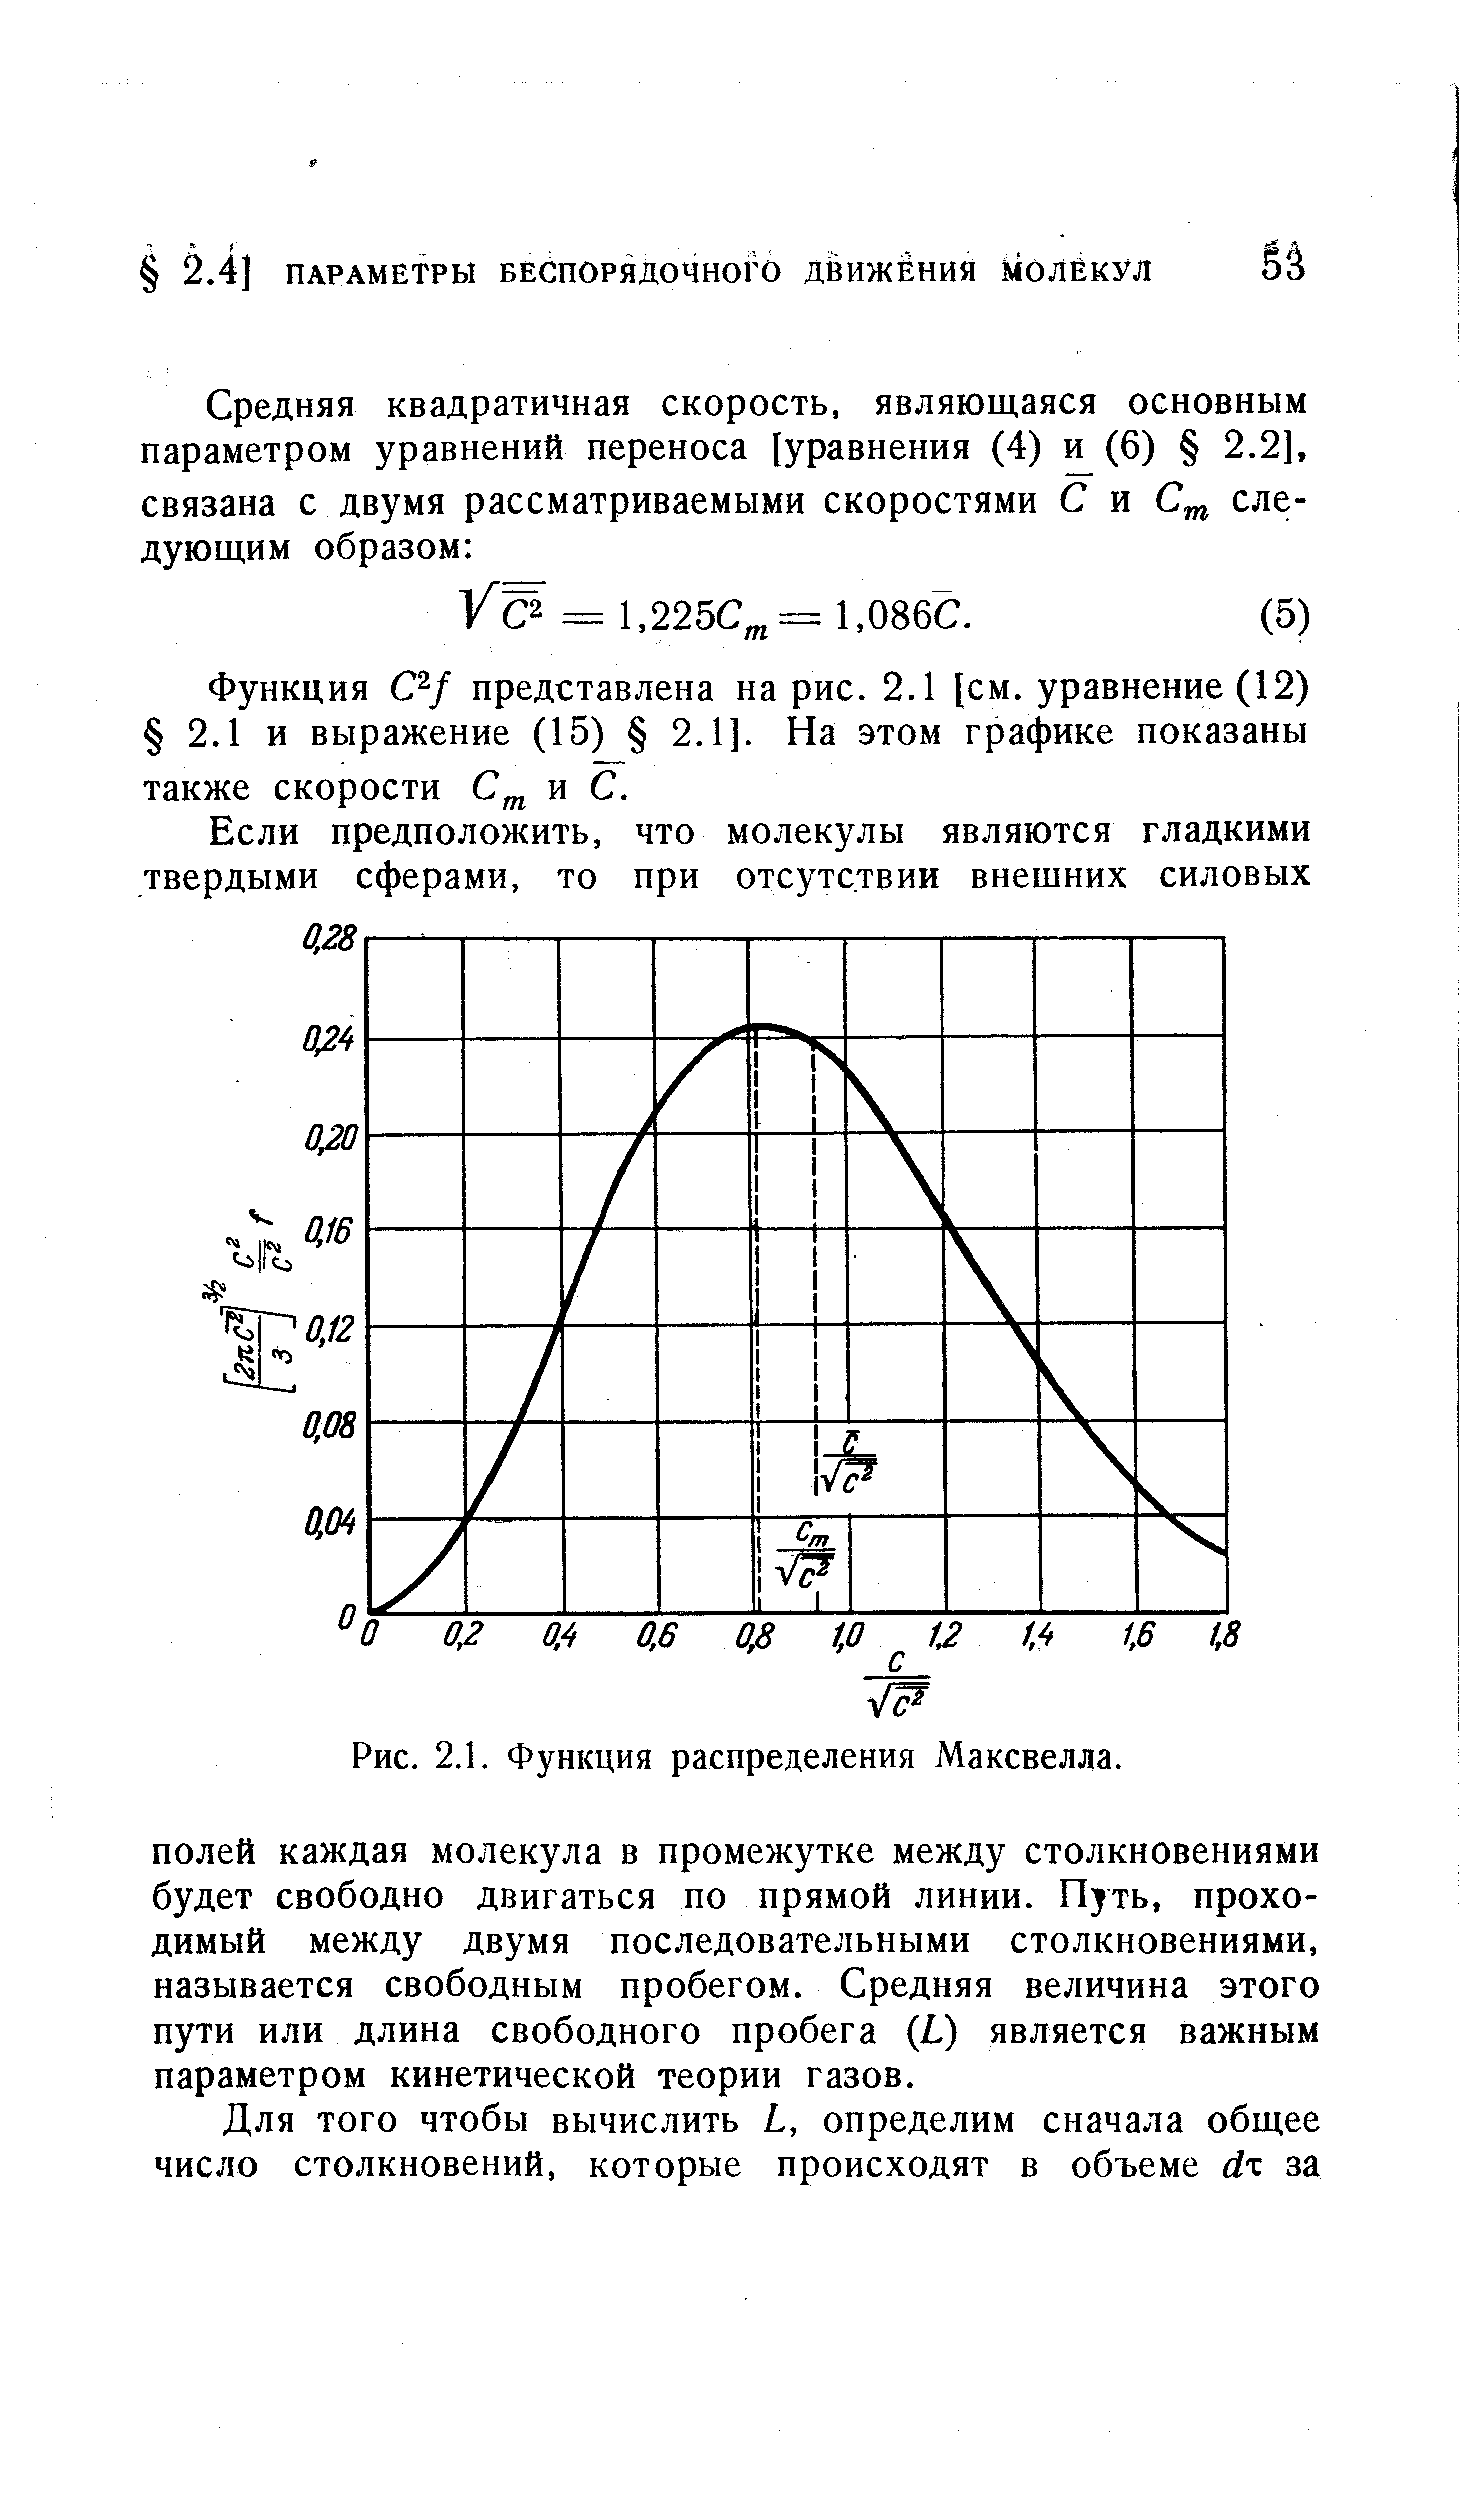 Функция С / представлена на рис. 2.1 [см. уравнение (12) 2.1 и выражение (15) 2.1]. На этом графике показаны также скорости и С.
